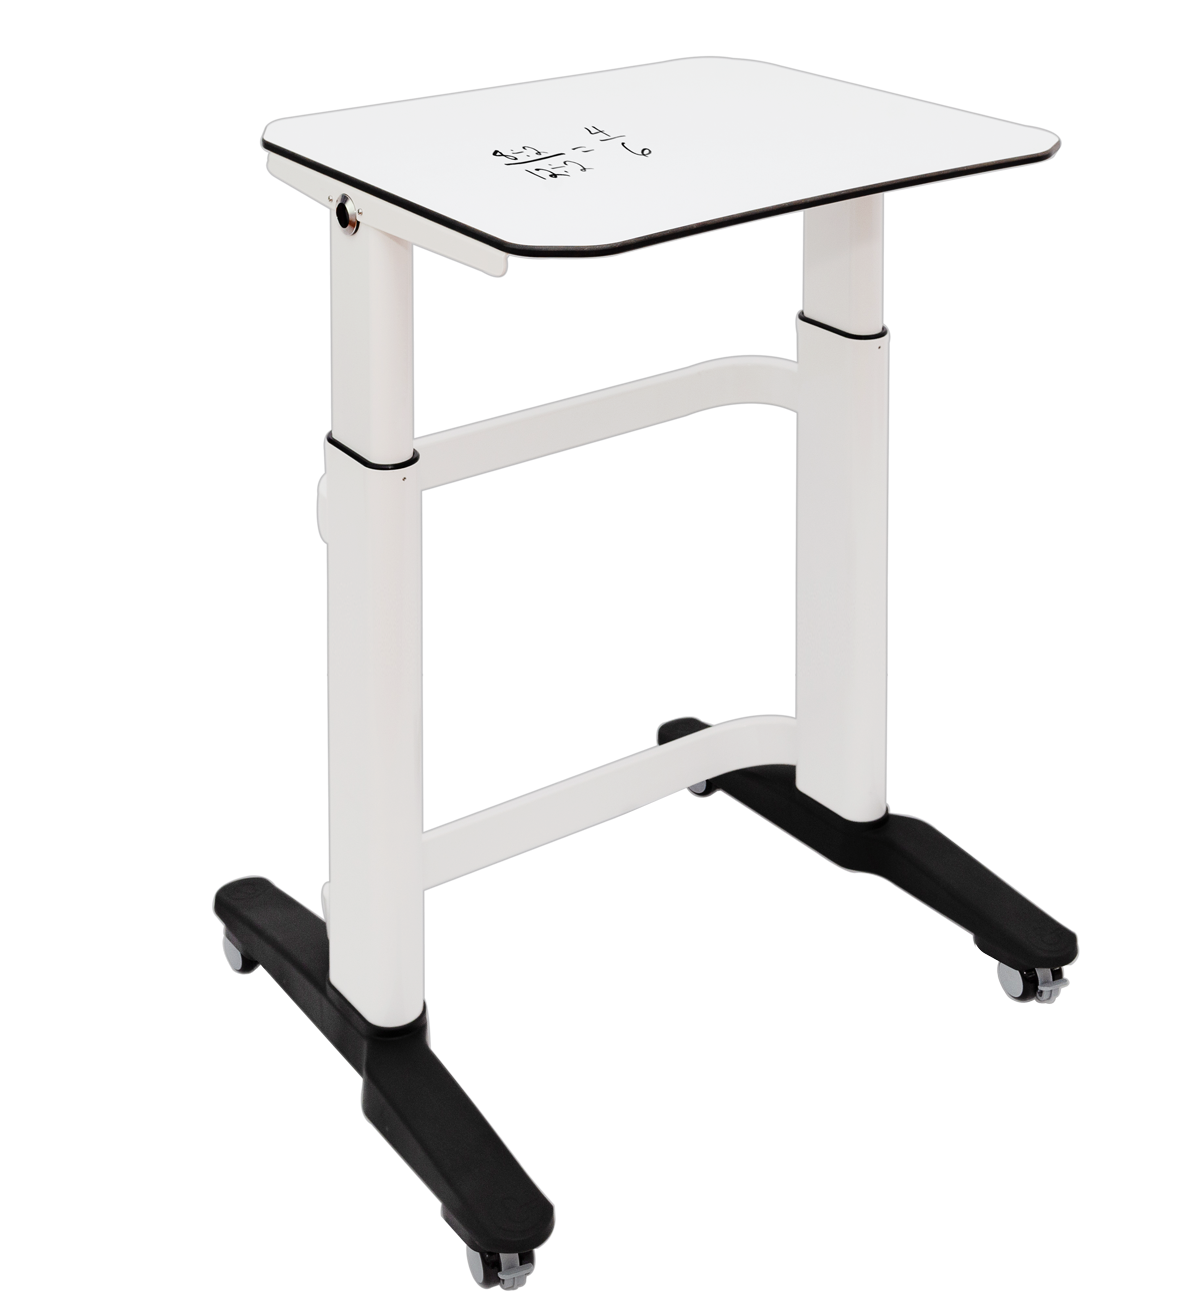 Amperstand-Large Desk-Writable-50mm Castors